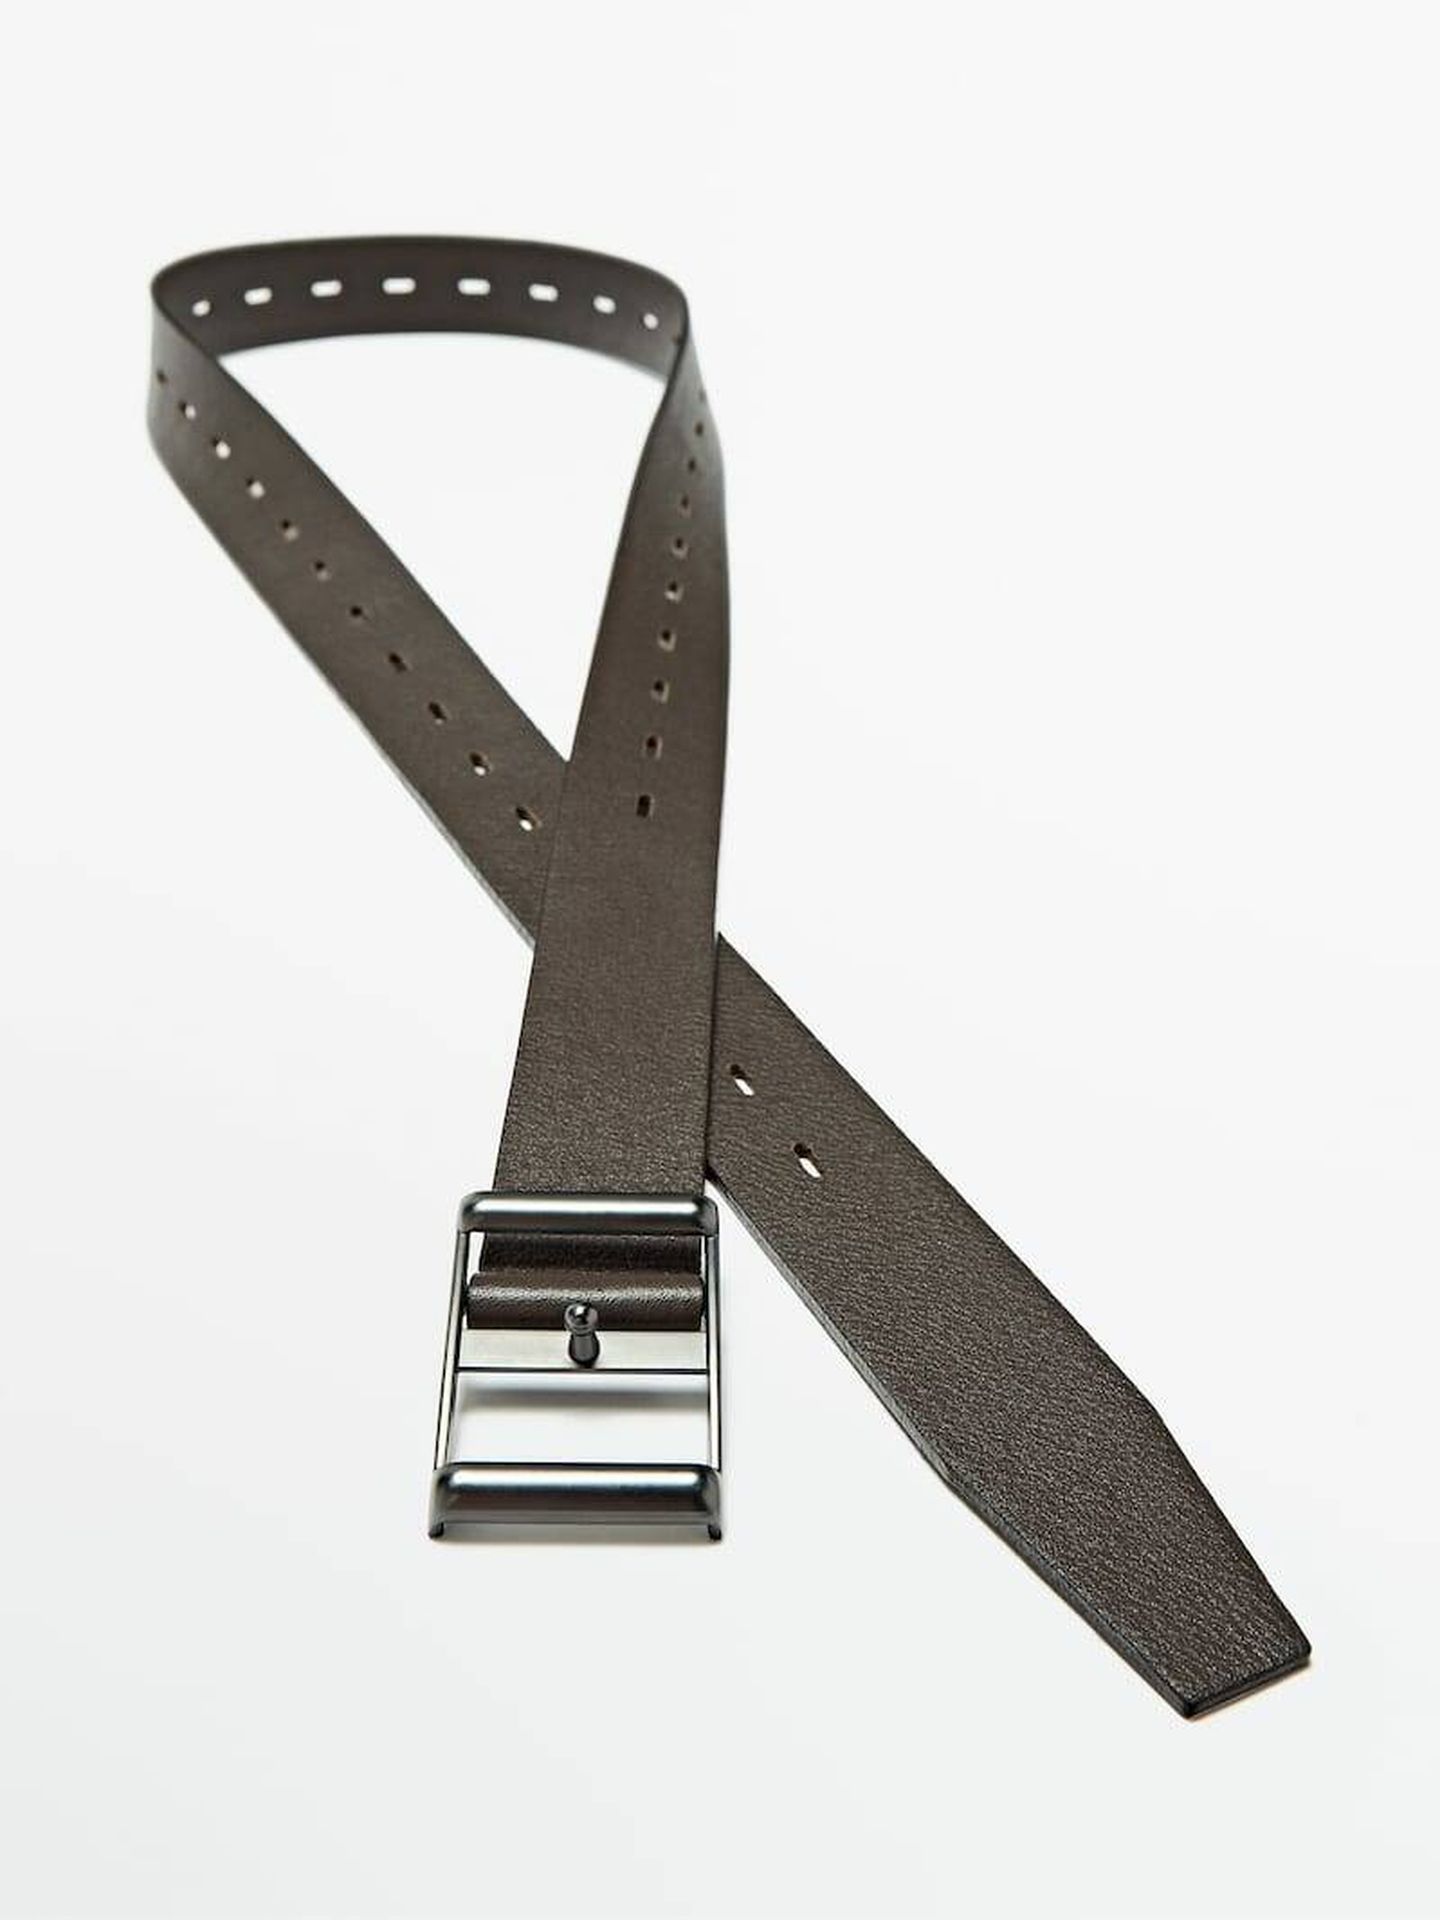 Cinturón de Massimo Dutti. (Cortesía)